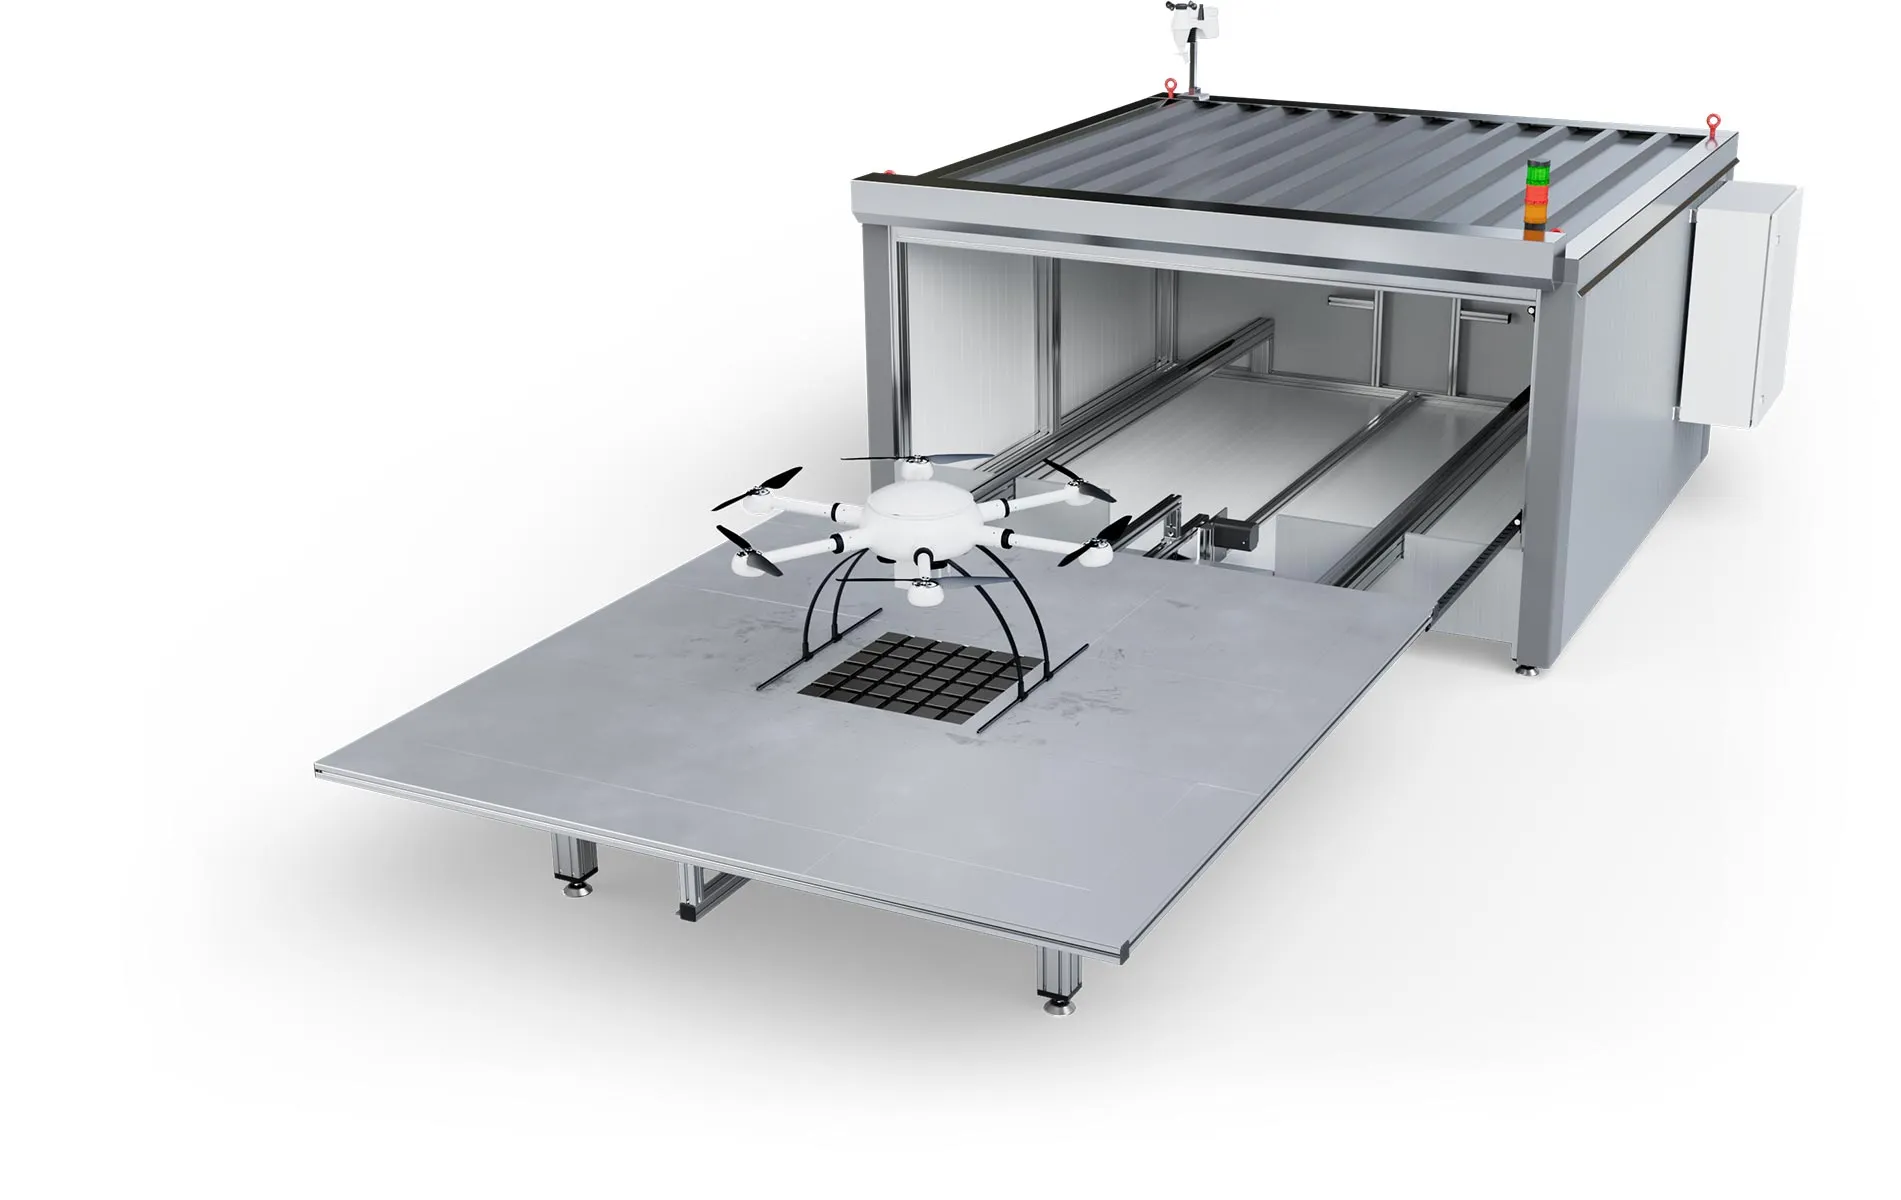 Exabotix DronePort LiDAR حظيرة عرض أعلى يمين مع طائرة بدون طيار Mercury LiDAR لمهام المسح الدقيقة والمسح الضوئي ثلاثي الأبعاد.